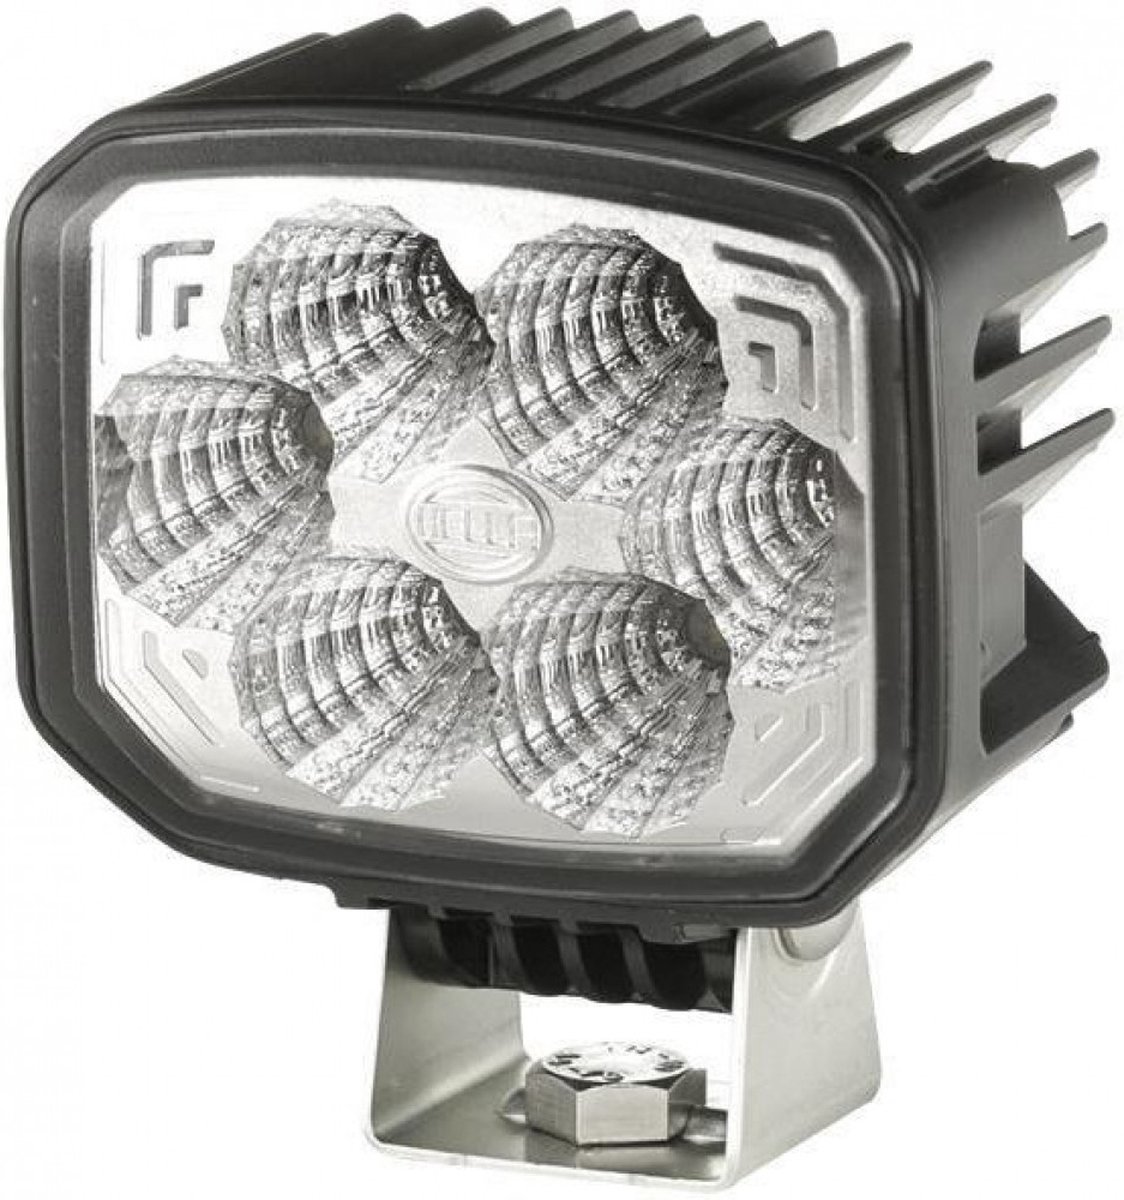 Hella Werklamp Power Beam 1000 compact - 1GA996188511 | Norm: RCM | Lichtbeeld: 100 x 80 mm | Aantal LED's: 6 | Lumen: 1000 lm | Kleurtemperatuur: 6500 K | Volt: 24 V